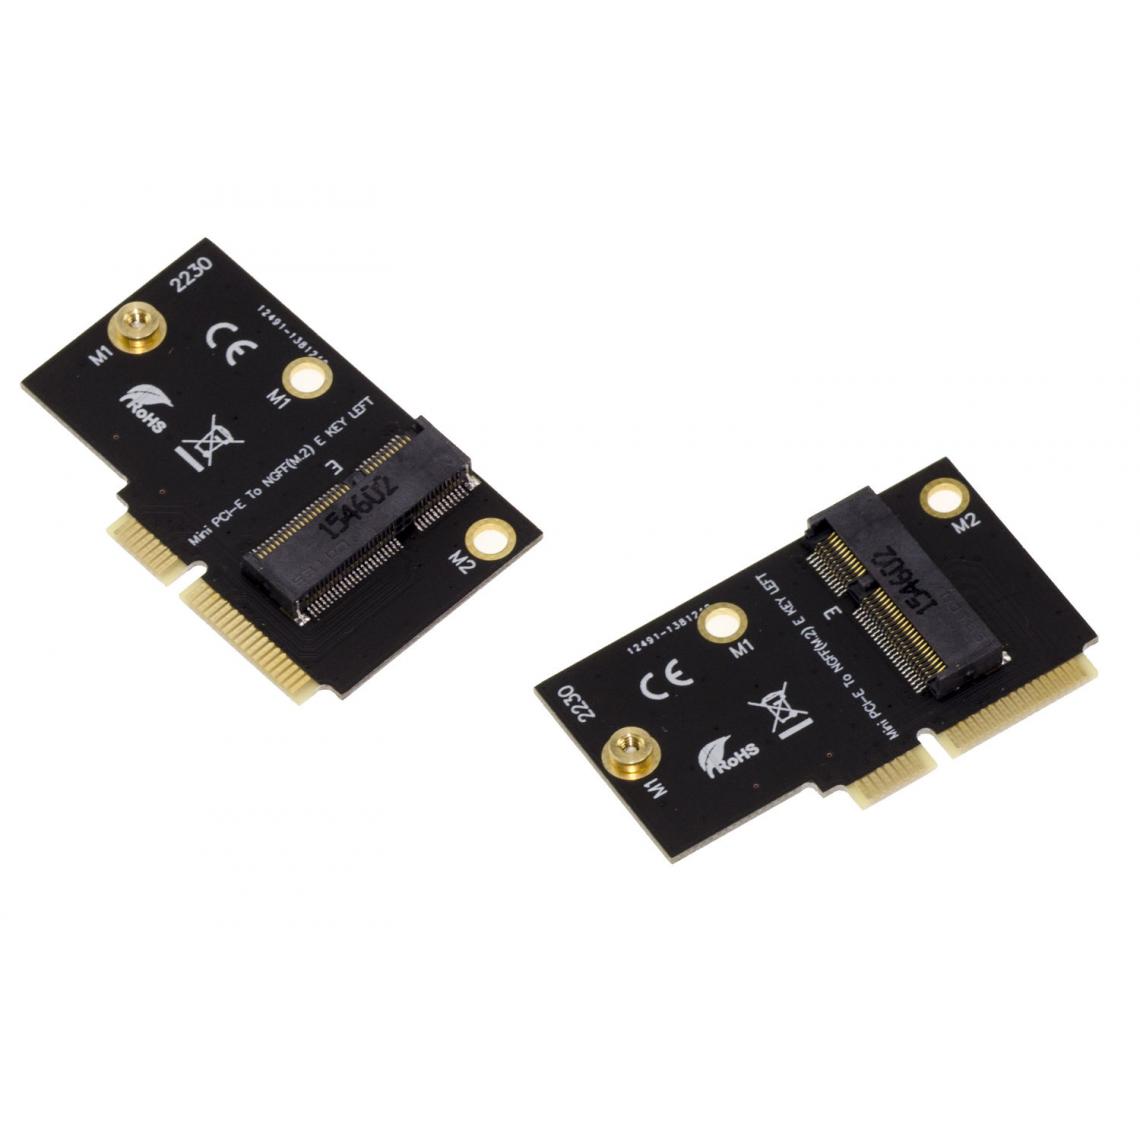 Kalea-Informatique - Adaptateur M2 E Key vers miniPCIe pour cartes Intel AX200 9260 8265 8260 7265 - Carte Contrôleur USB